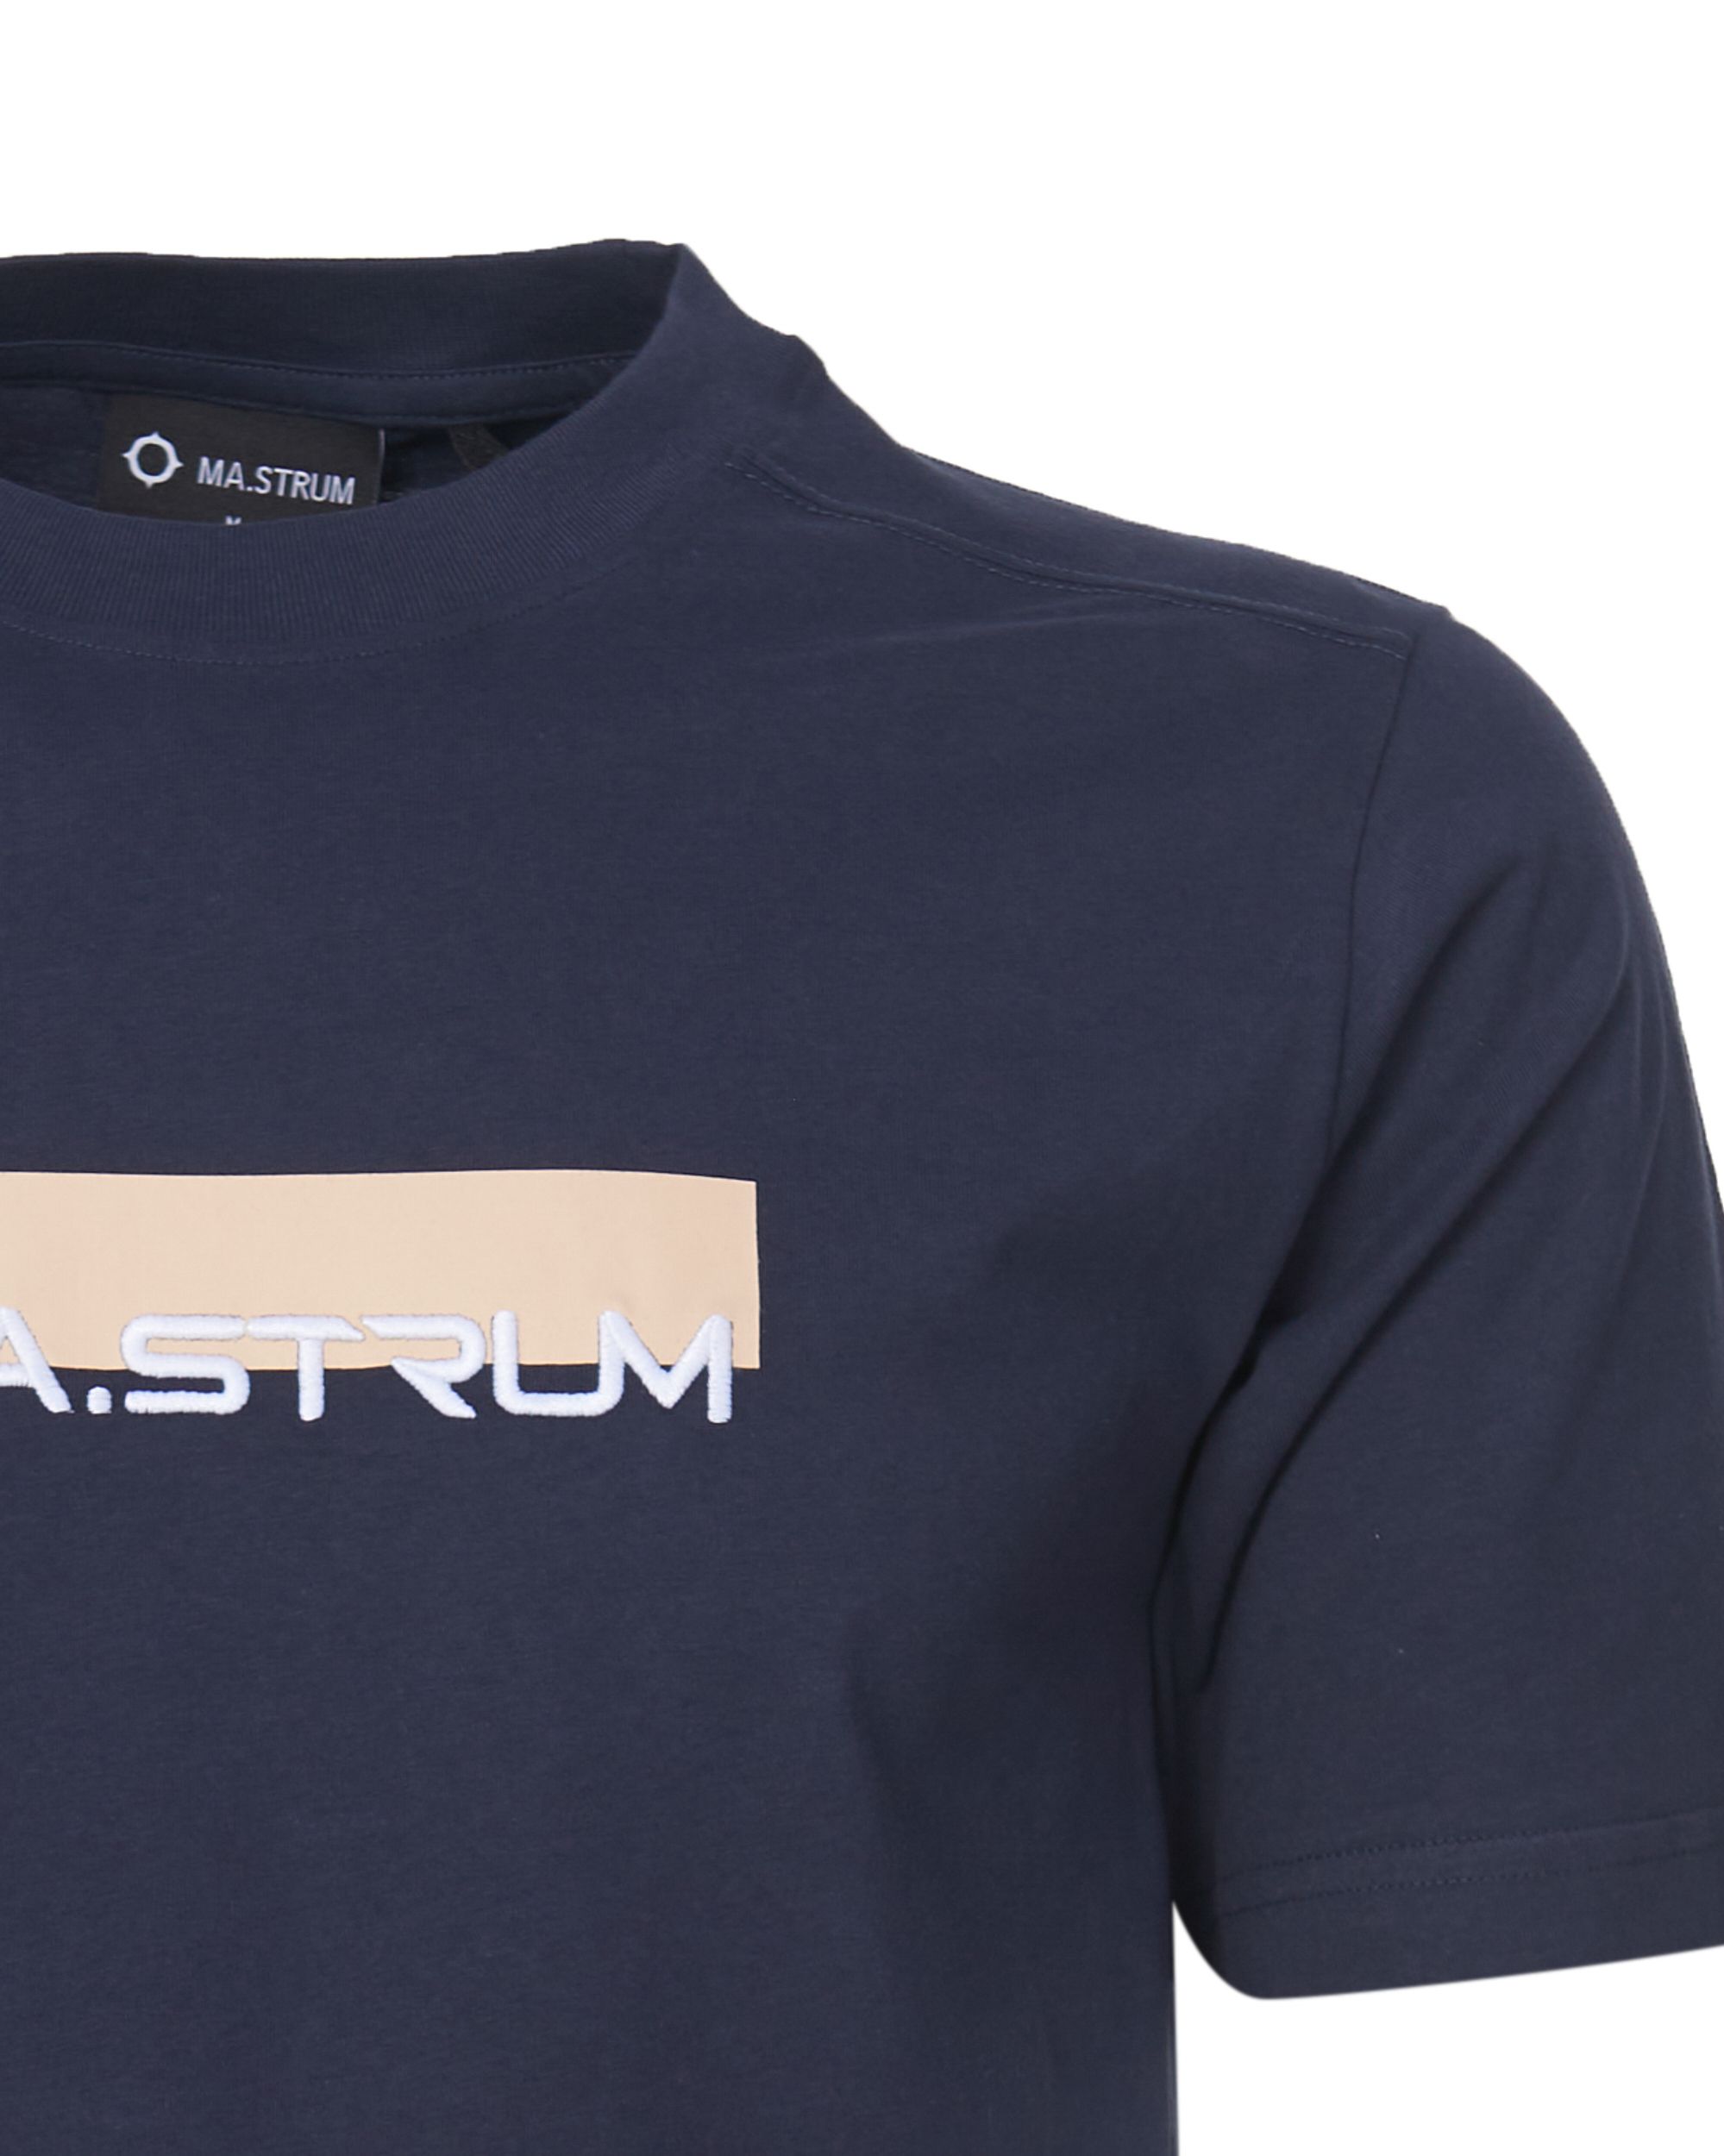 MA.STRUM T-shirt KM Donker blauw 081024-001-L